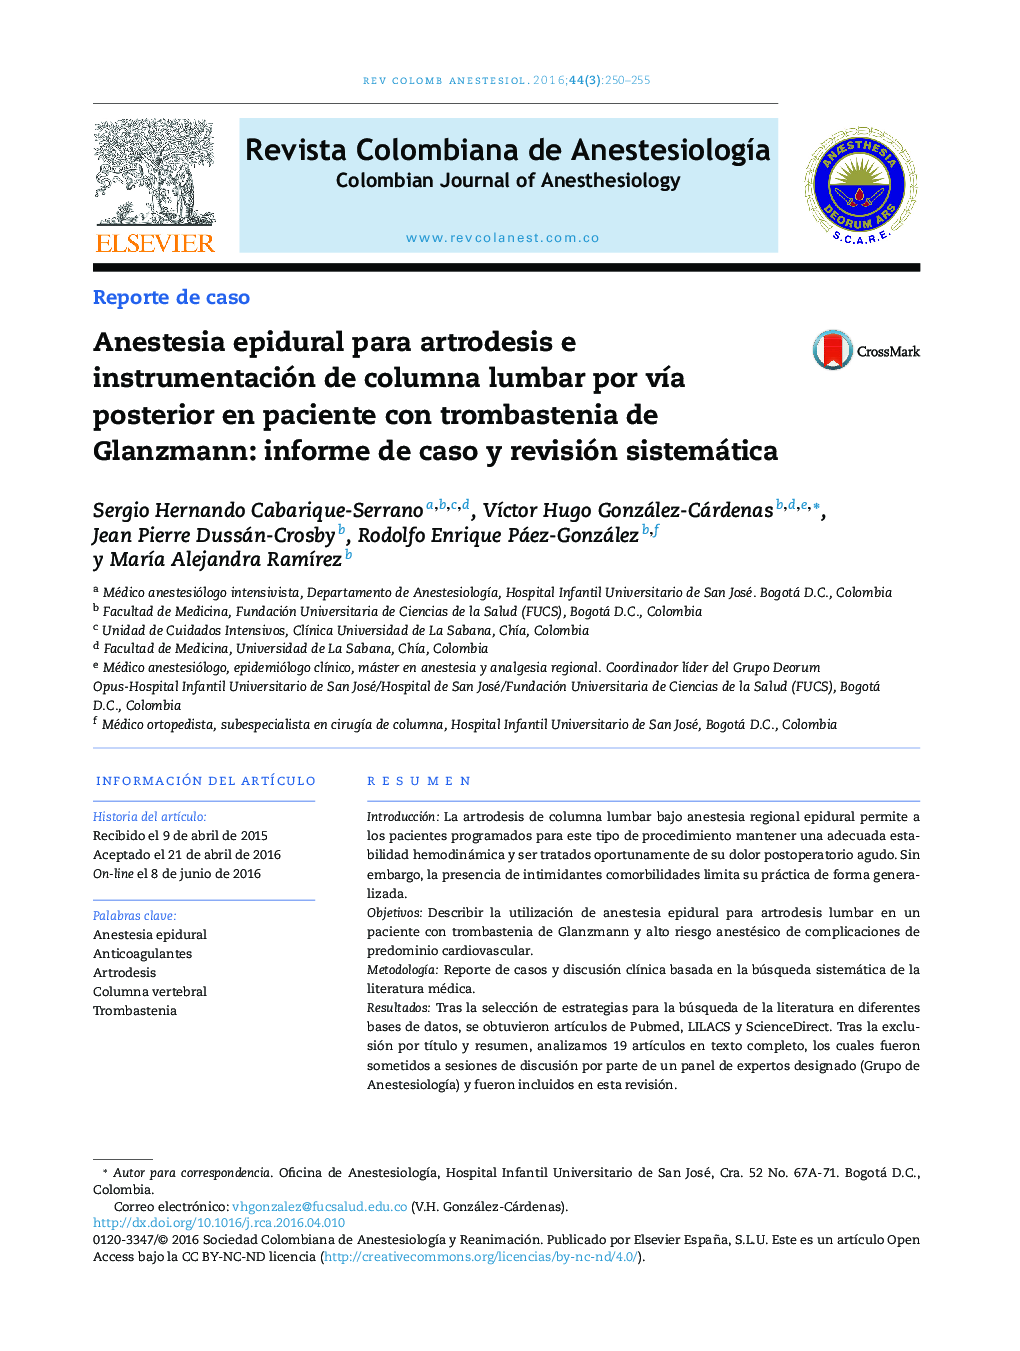 Anestesia epidural para artrodesis e instrumentación de columna lumbar por vía posterior en paciente con trombastenia de Glanzmann: informe de caso y revisión sistemática